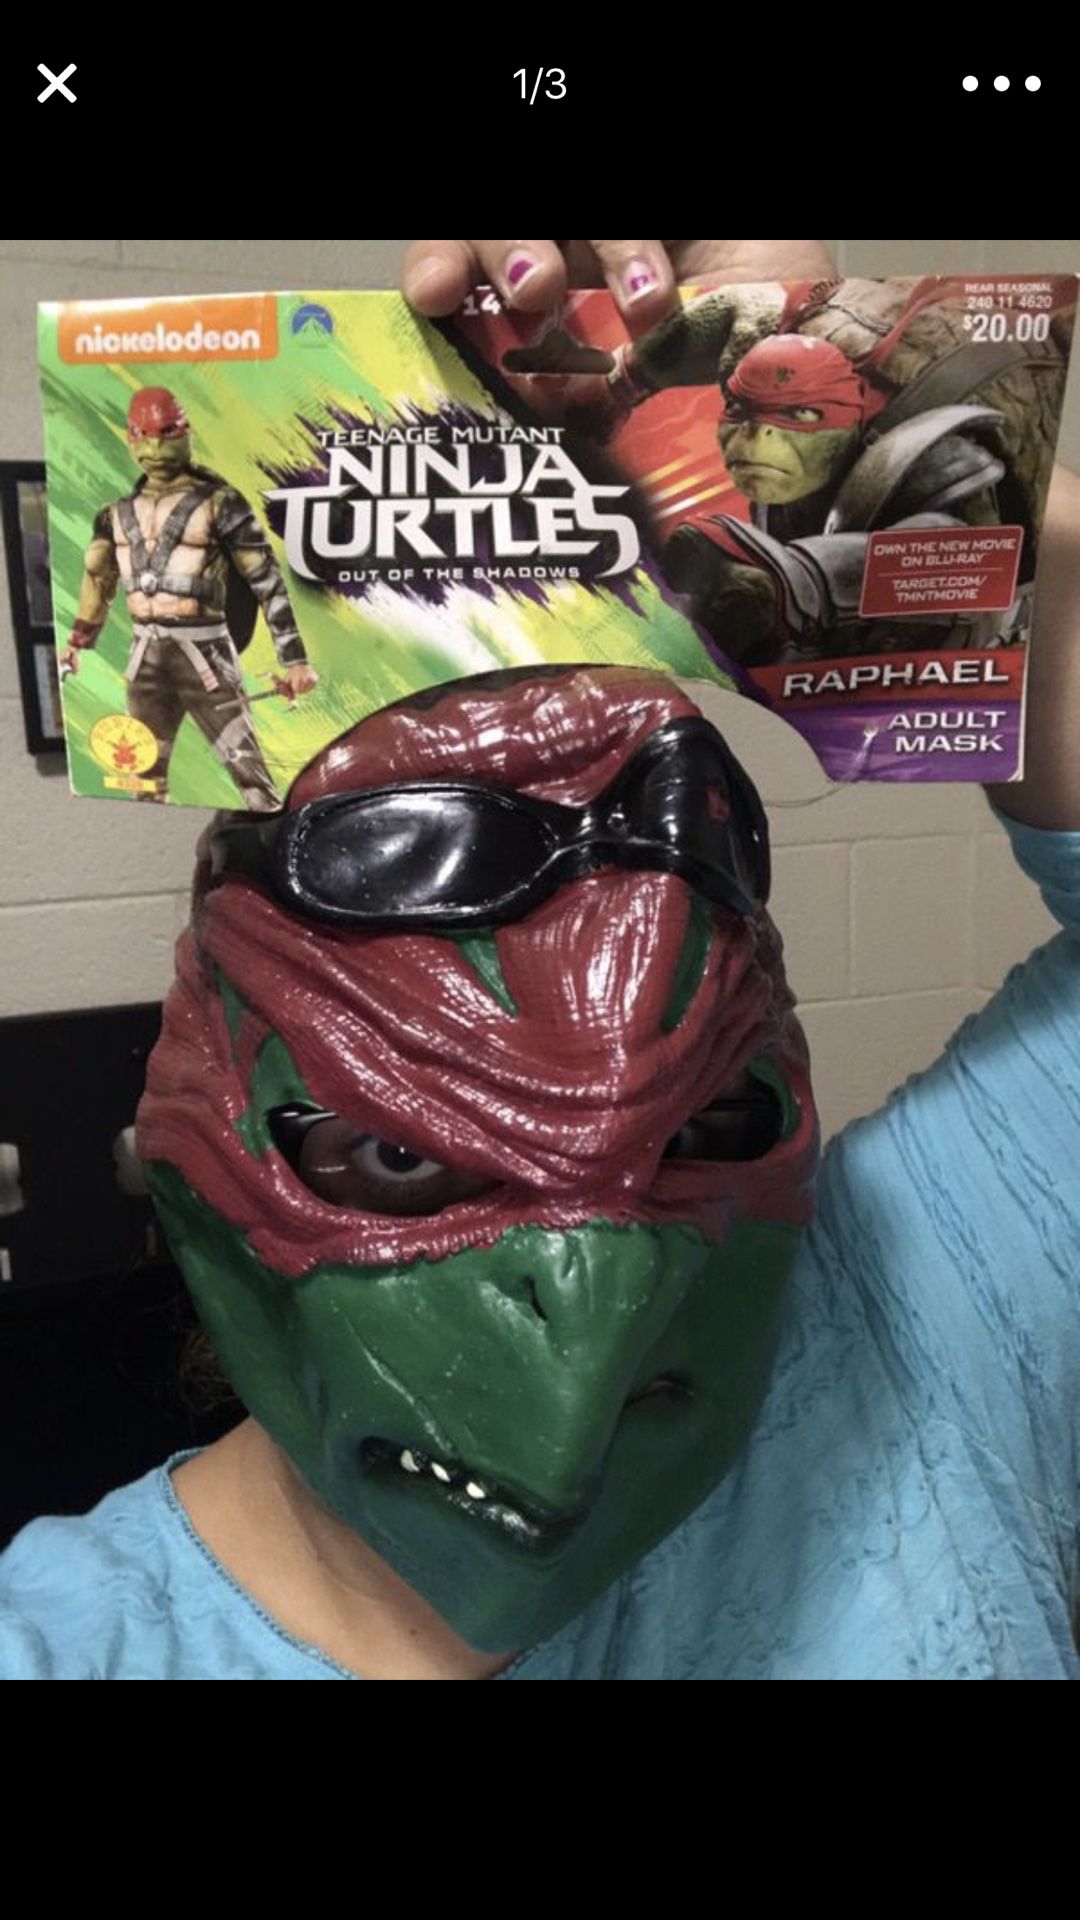 Ninja turtles masks